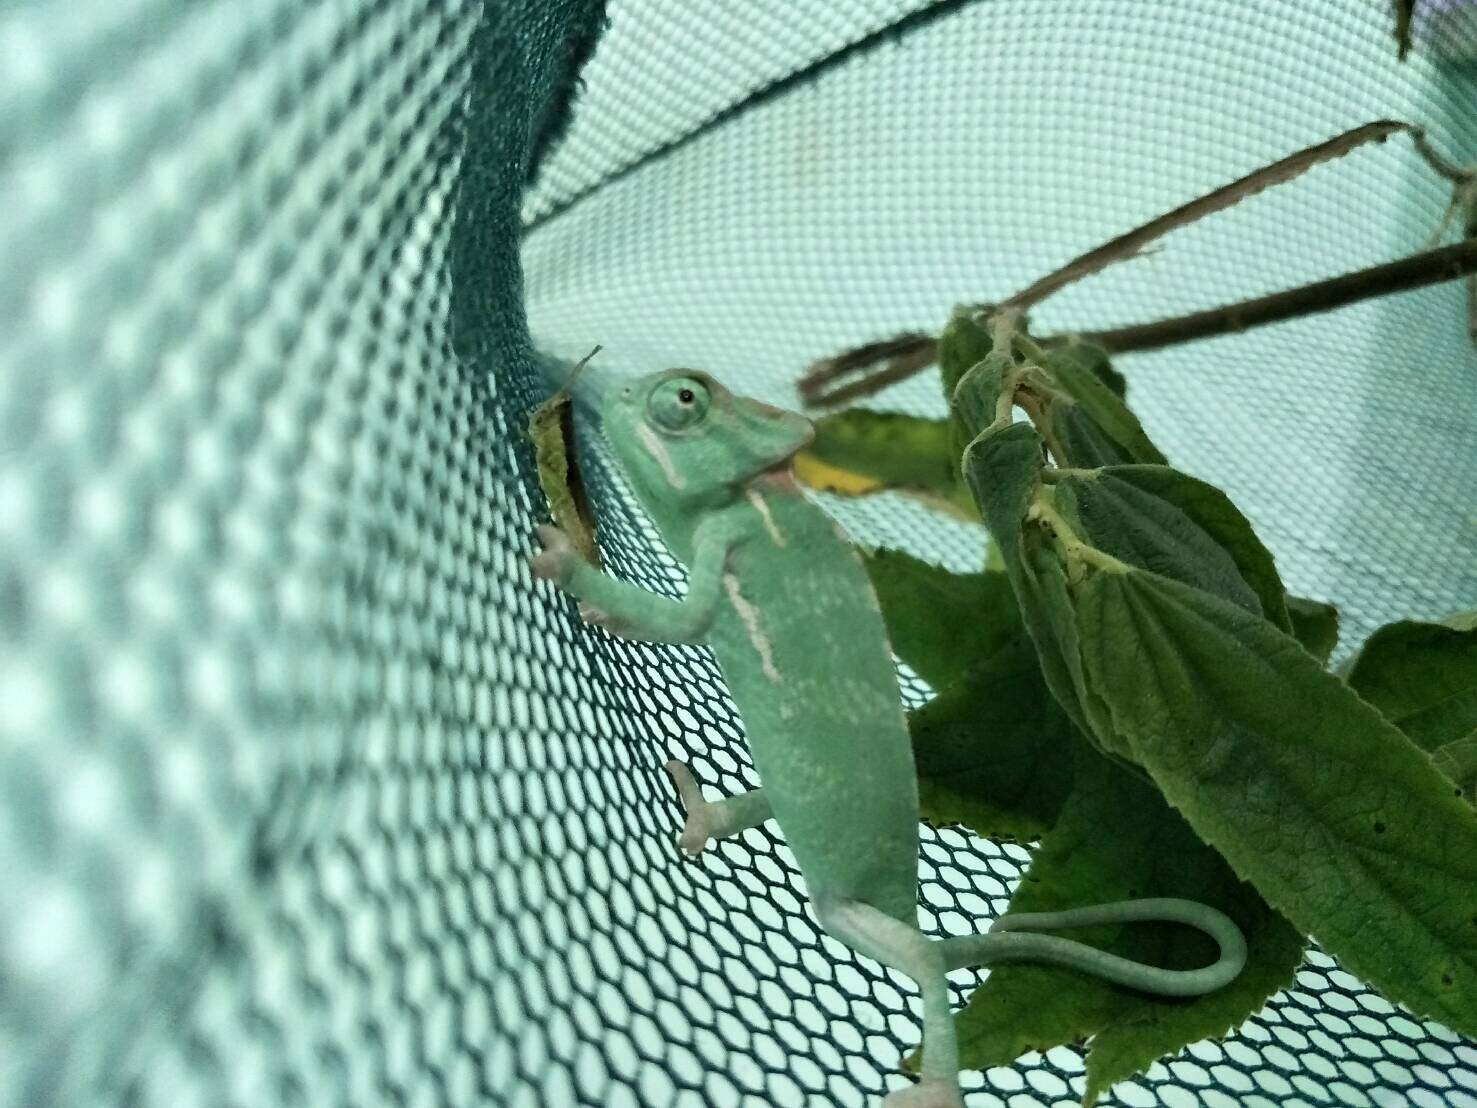 Rescued reptile in enclosure